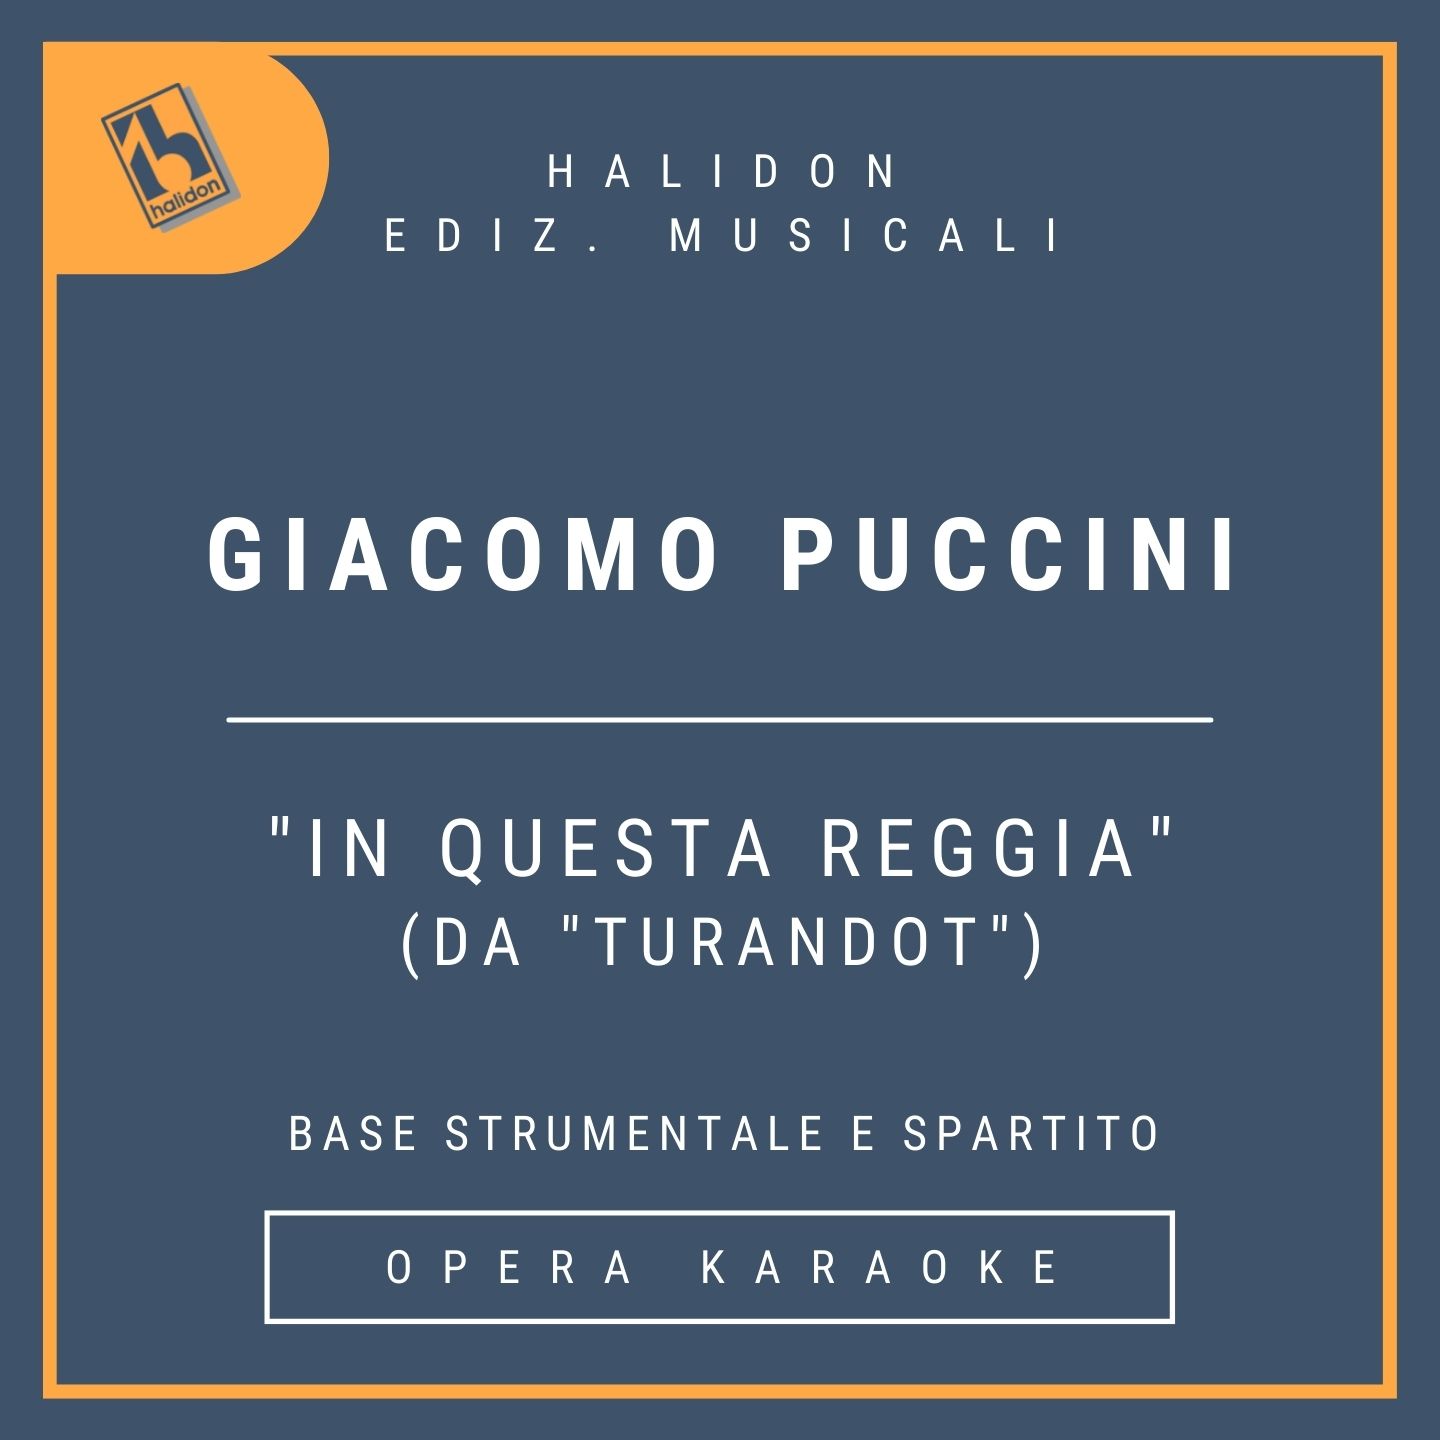 Giacomo Puccini - In questa reggia (da 'Turandot') - Aria di Turandot (soprano drammatico) - Base strumentale + spartito